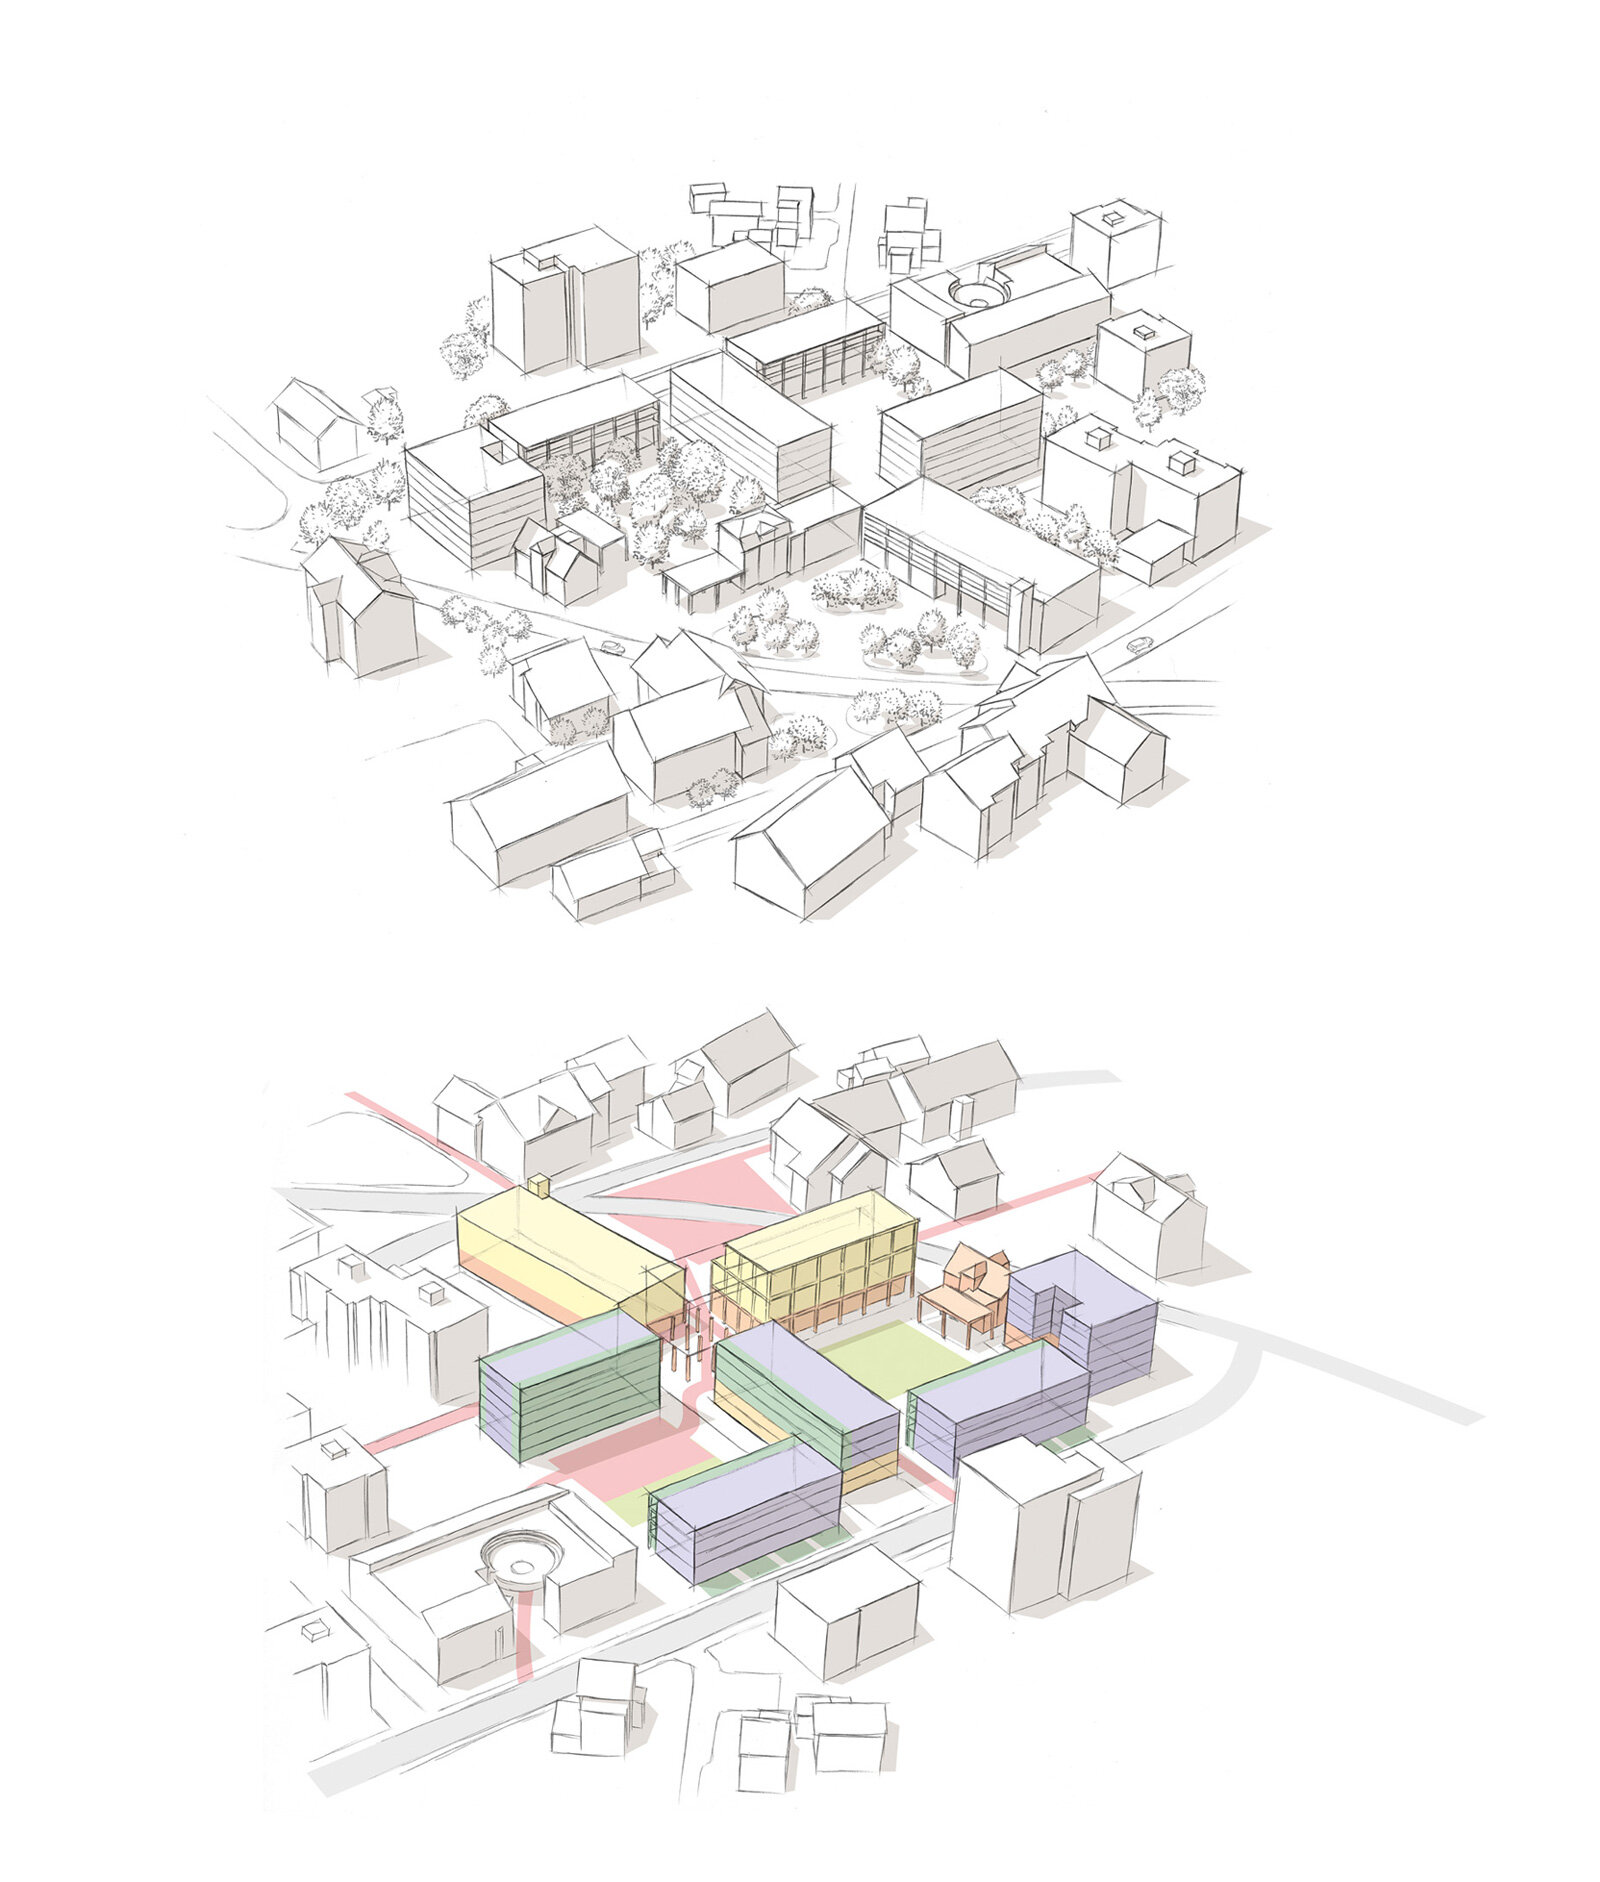 oculus-illustration-architektur-visualisierung-zeichnung-hrs-leepuent-duebendorf-uebersicht-2